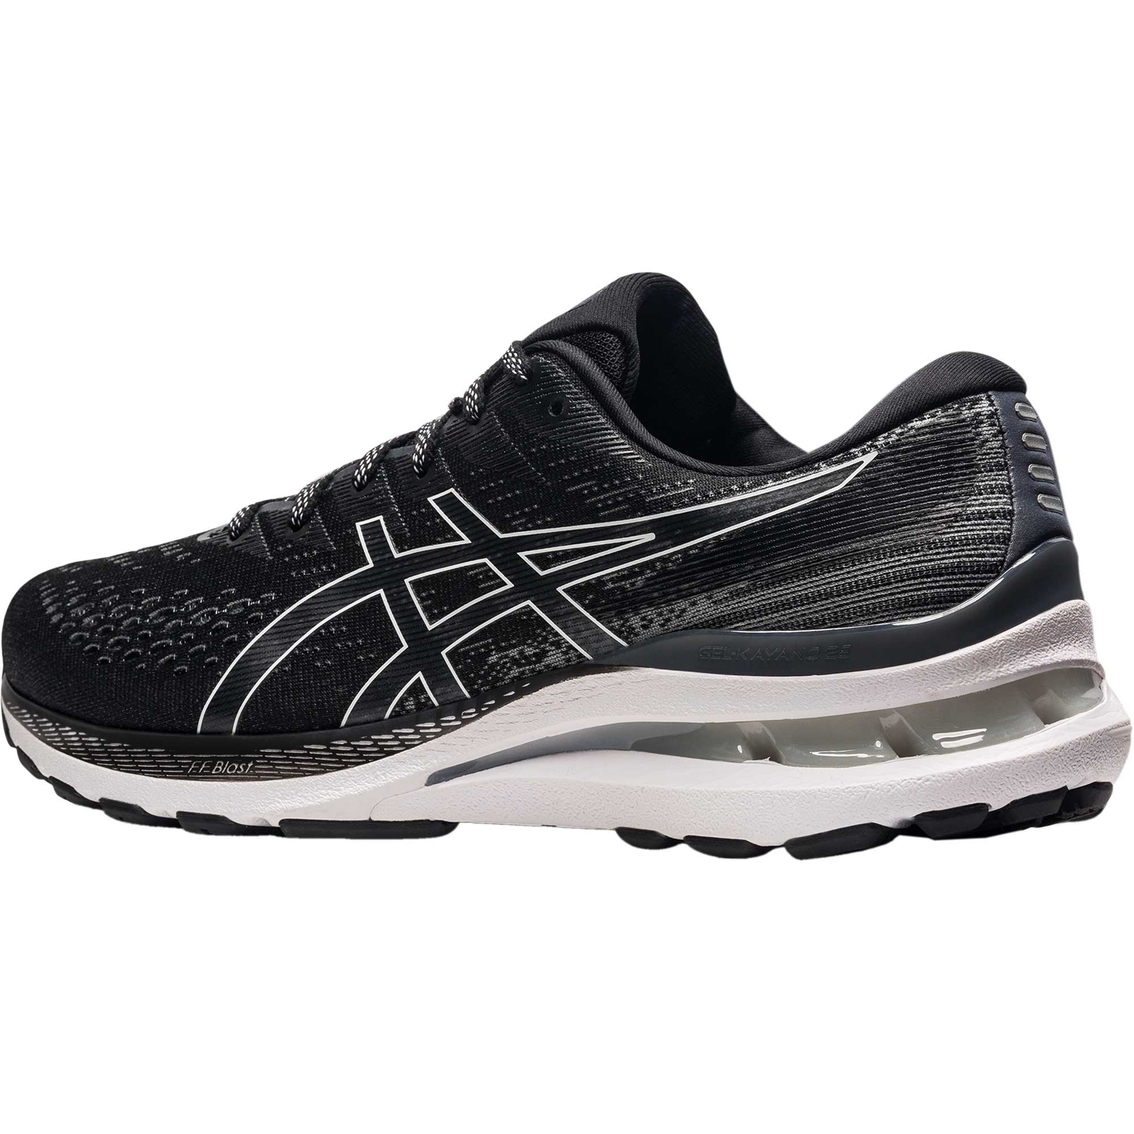 ASICS Men's Gel Kayano 28 Running Shoes - Image 7 of 7